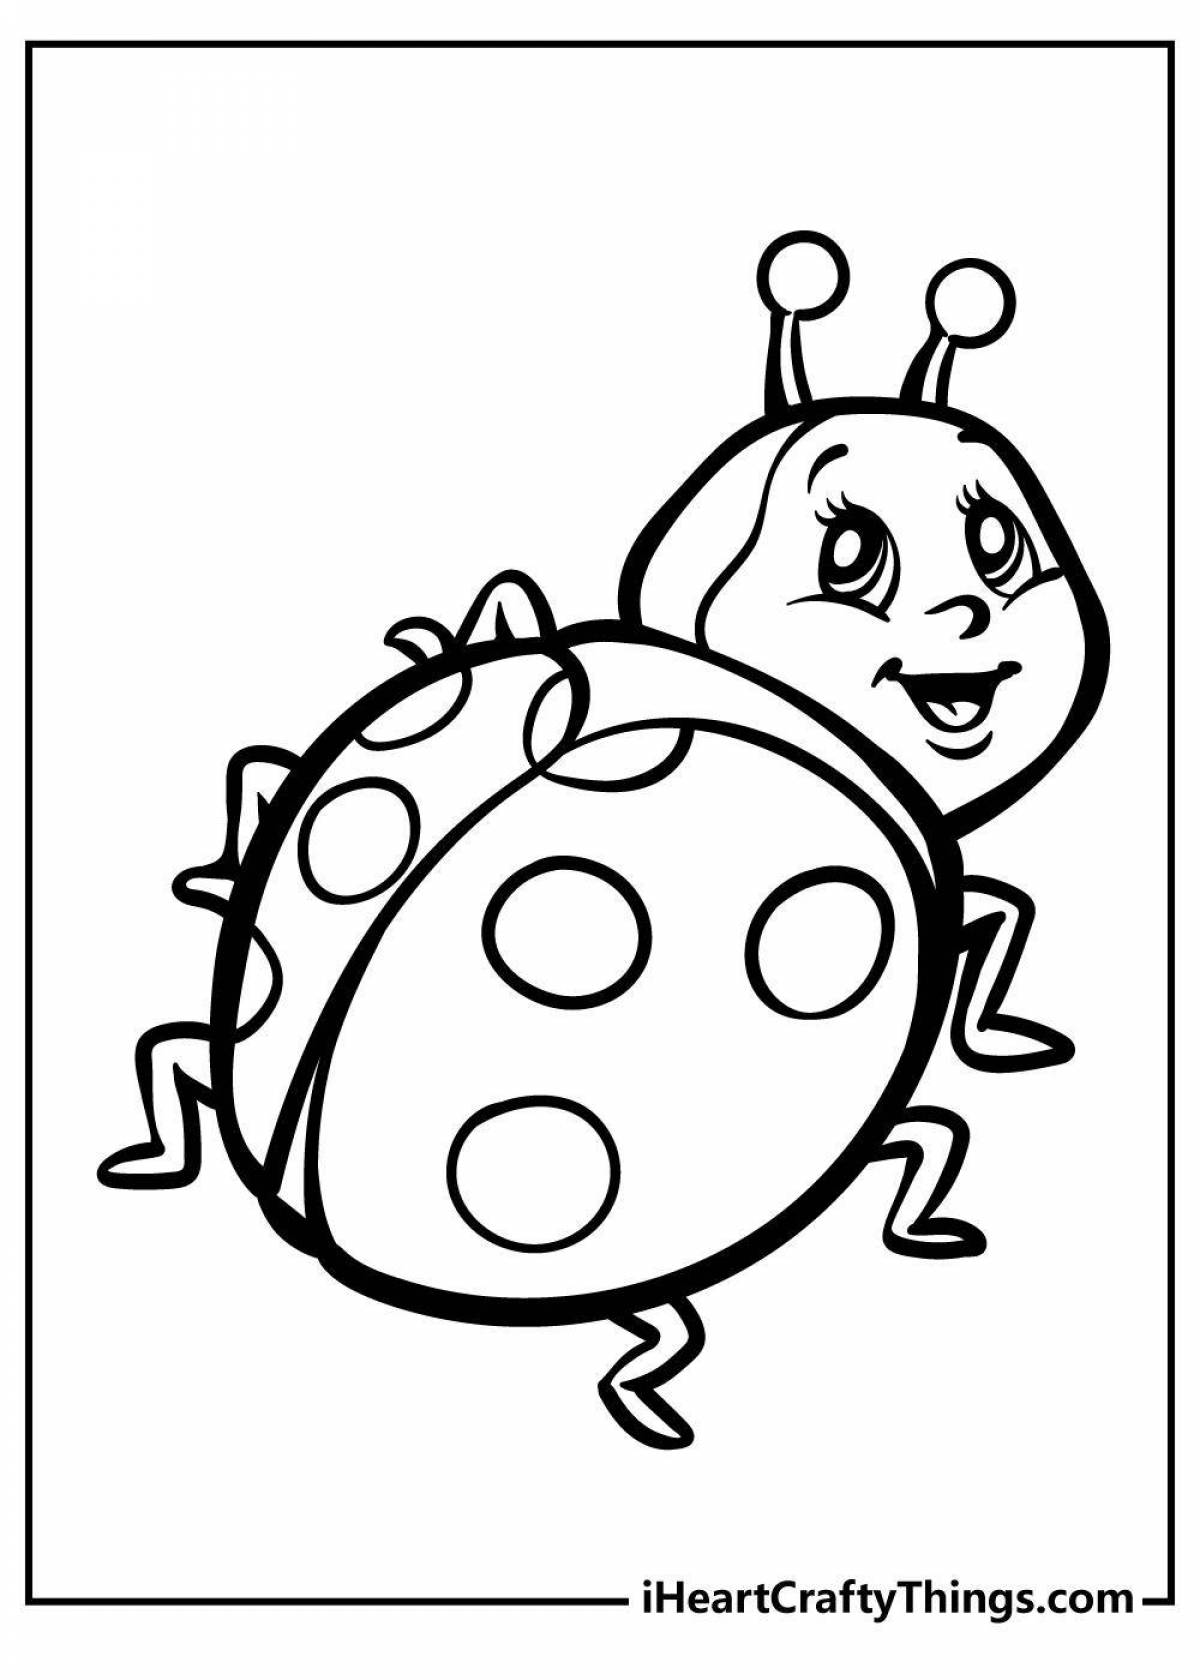 Coloring page charming ladybug